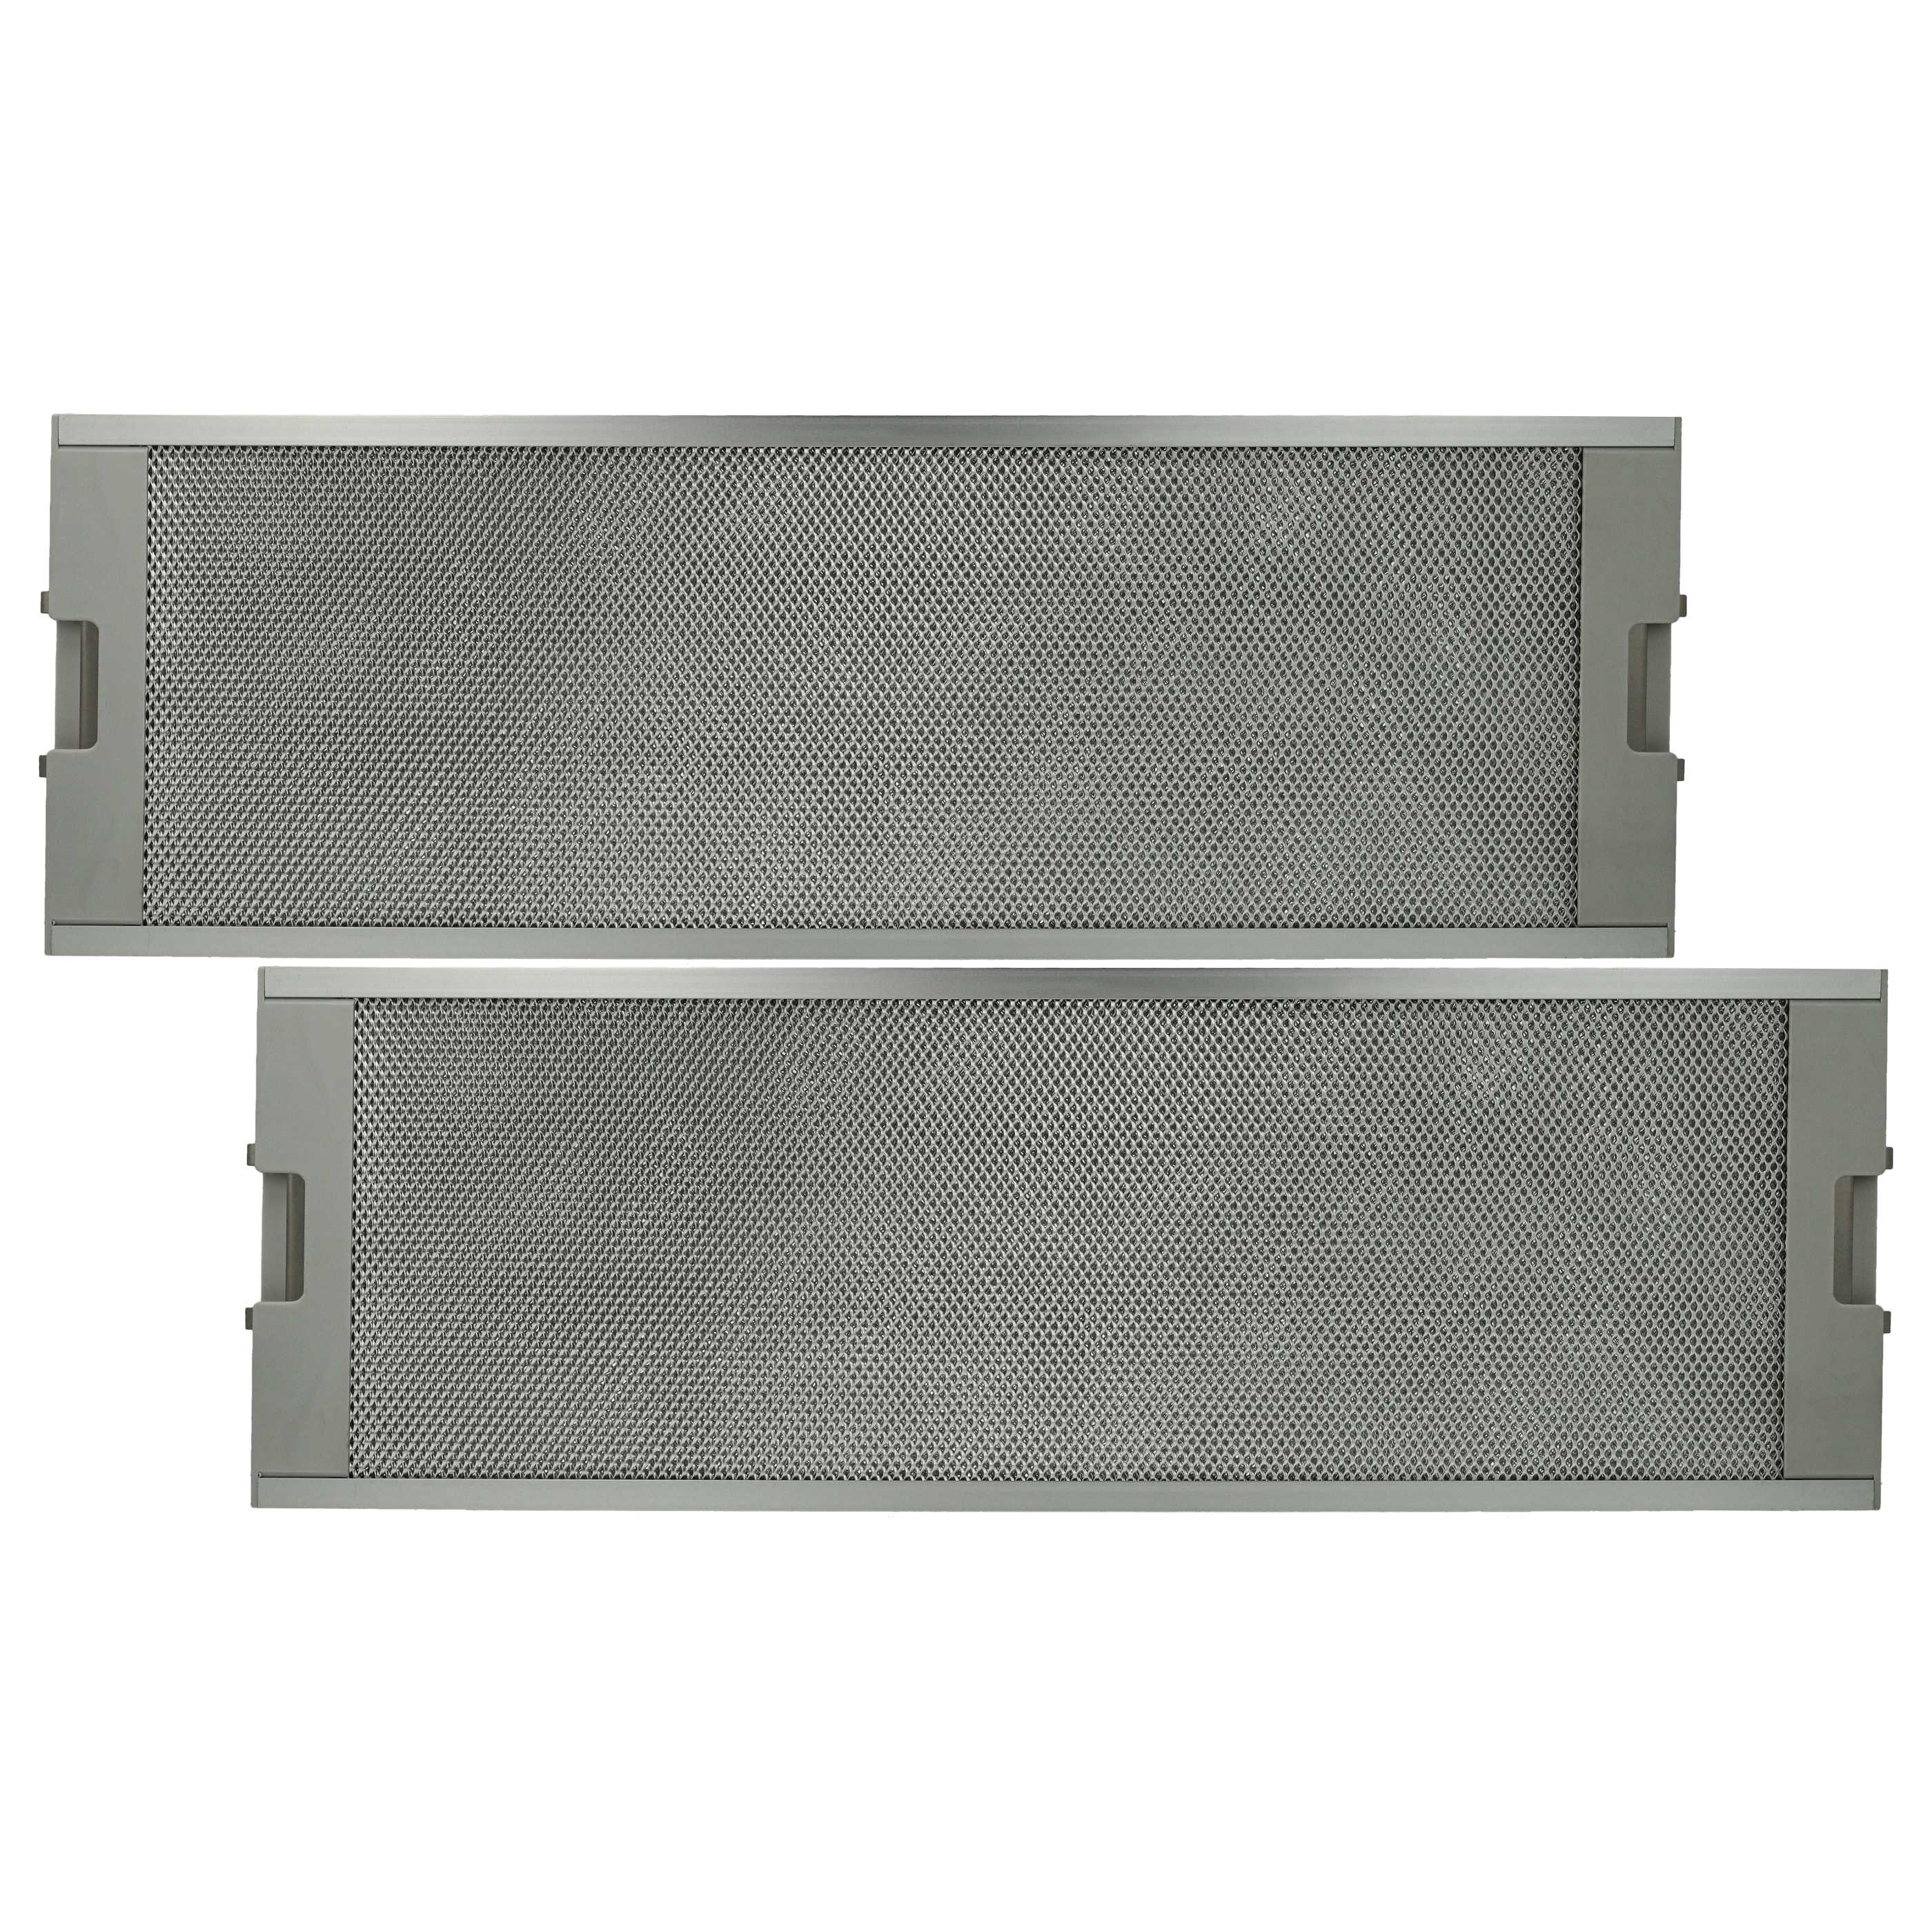 2x Dunstabzugshaube Metallfettfilter als Ersatz für Europart 804080 u.a.